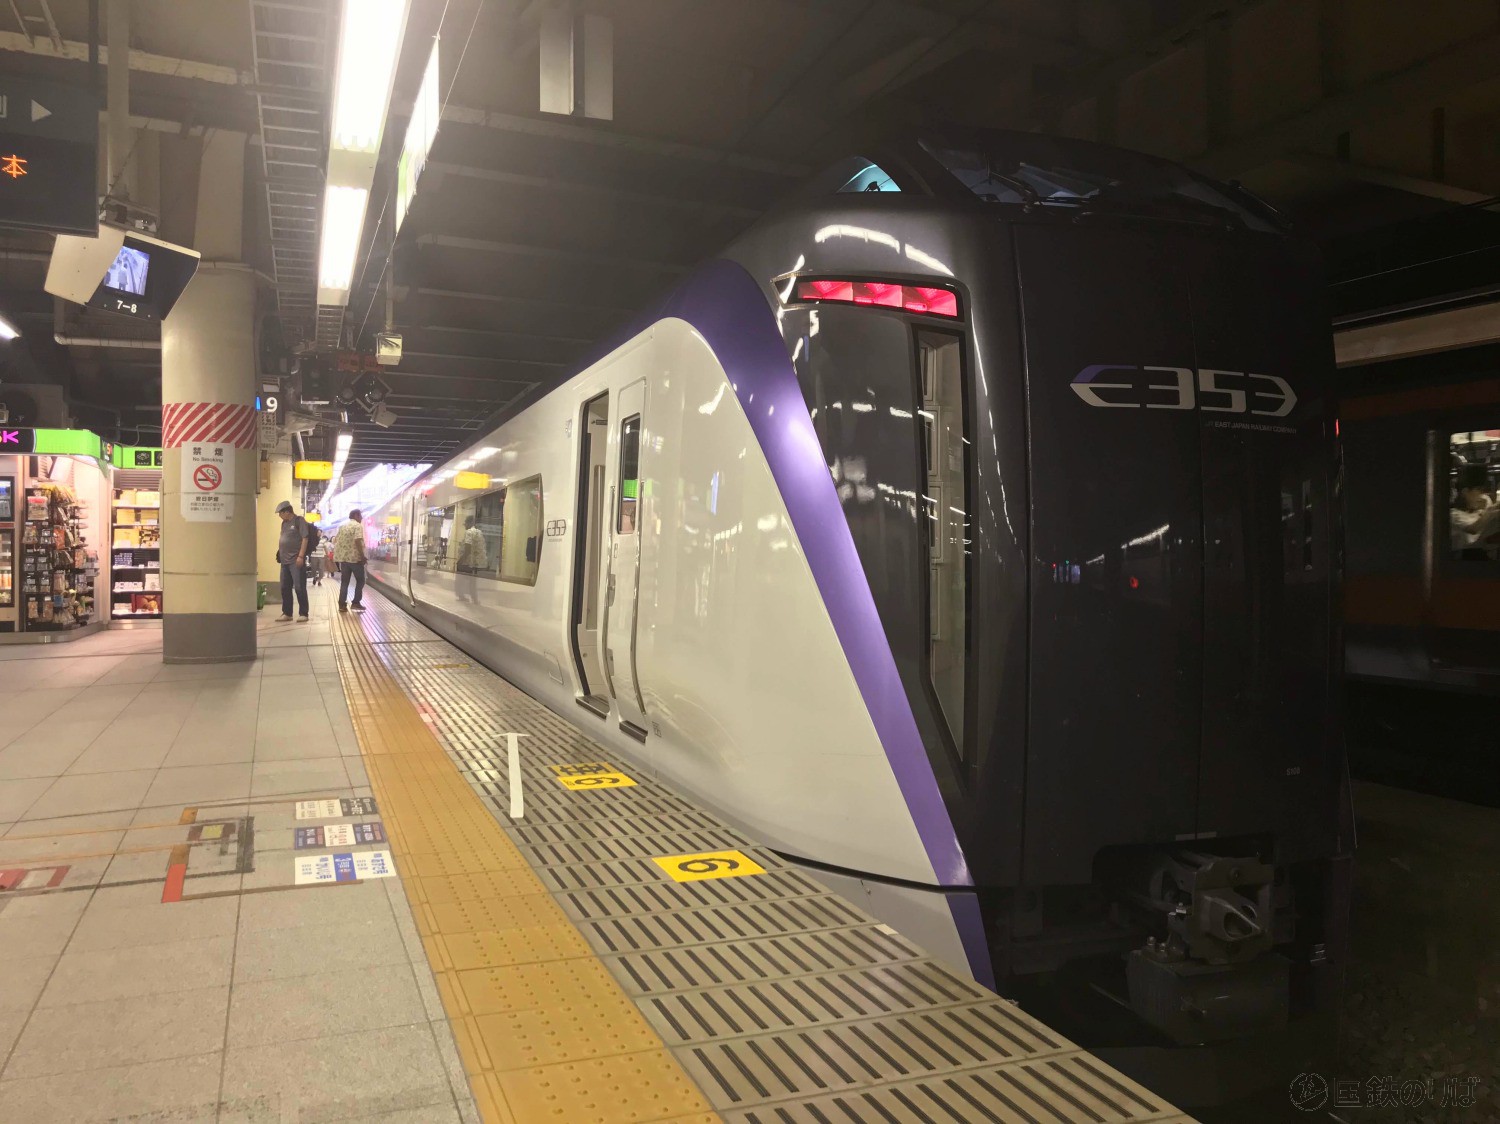 中央線特急では新宿発14時のスーパーあずさが最速列車として位置づけられている。1日1往復のみ立川を通過し、新宿ー八王子をノンストップ、その他甲府、茅野、上諏訪にしか止まらない。